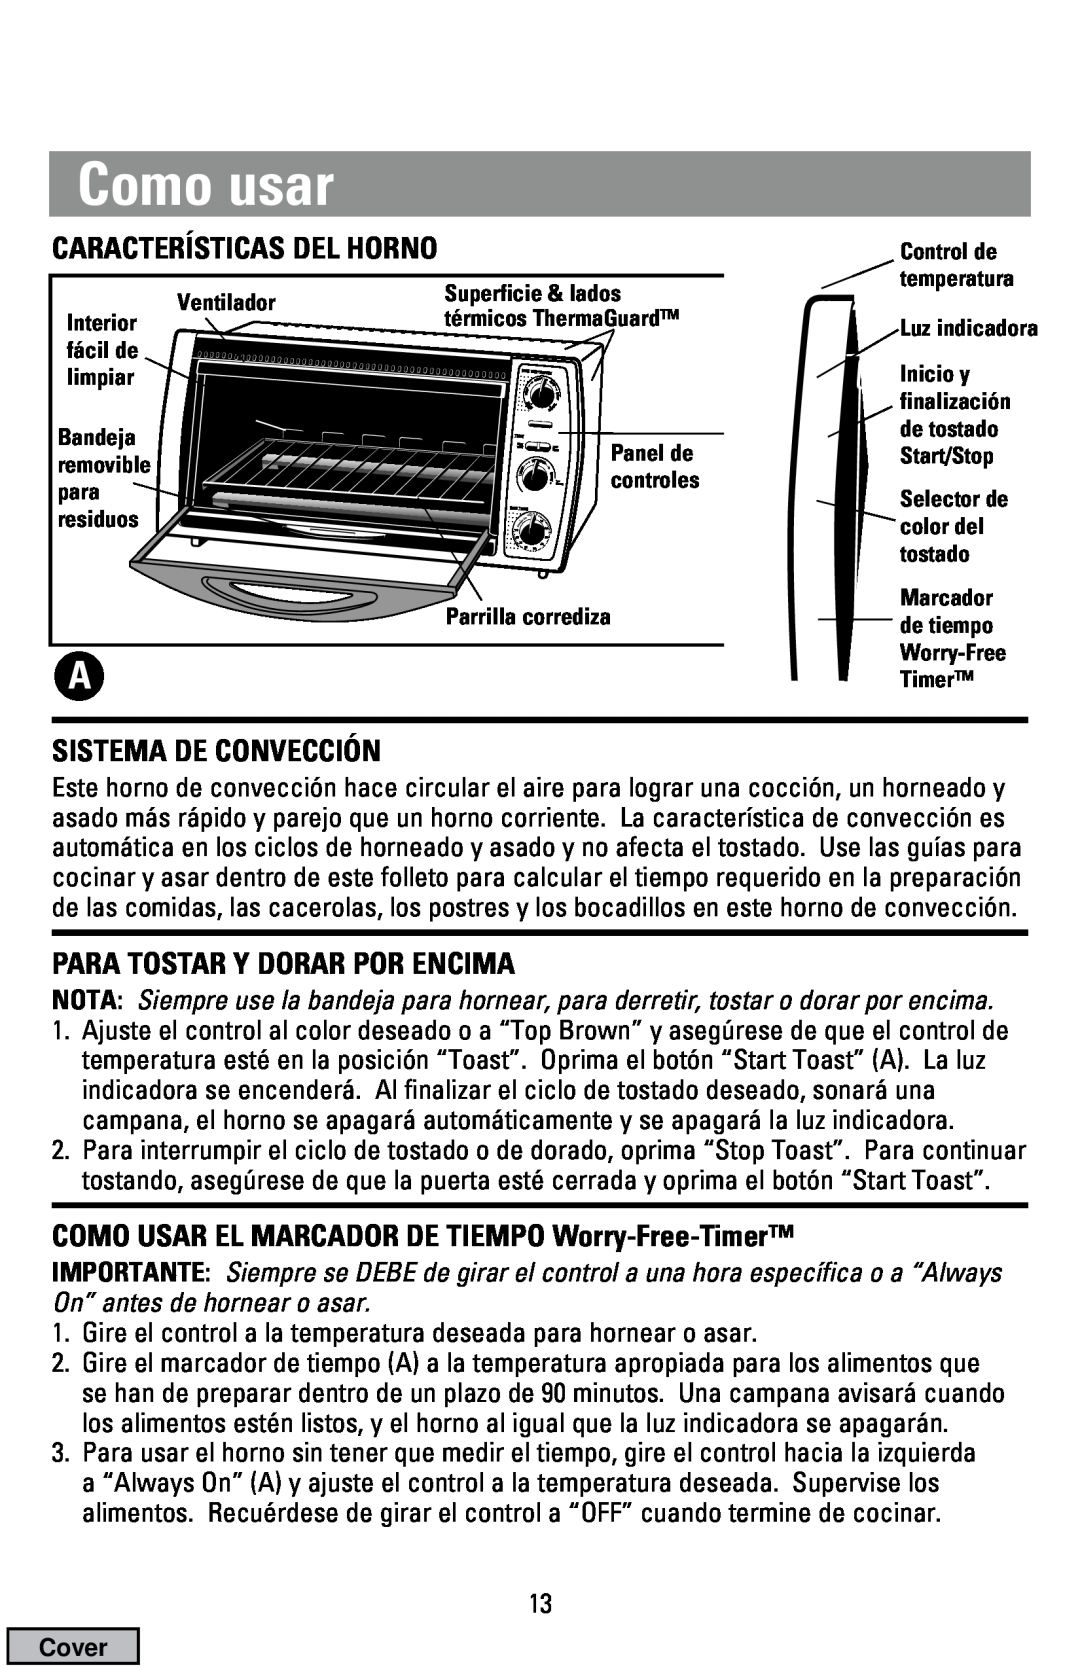 Black & Decker CTO9000 manual Como usar, Sistema De Convección, Para Tostar Y Dorar Por Encima 